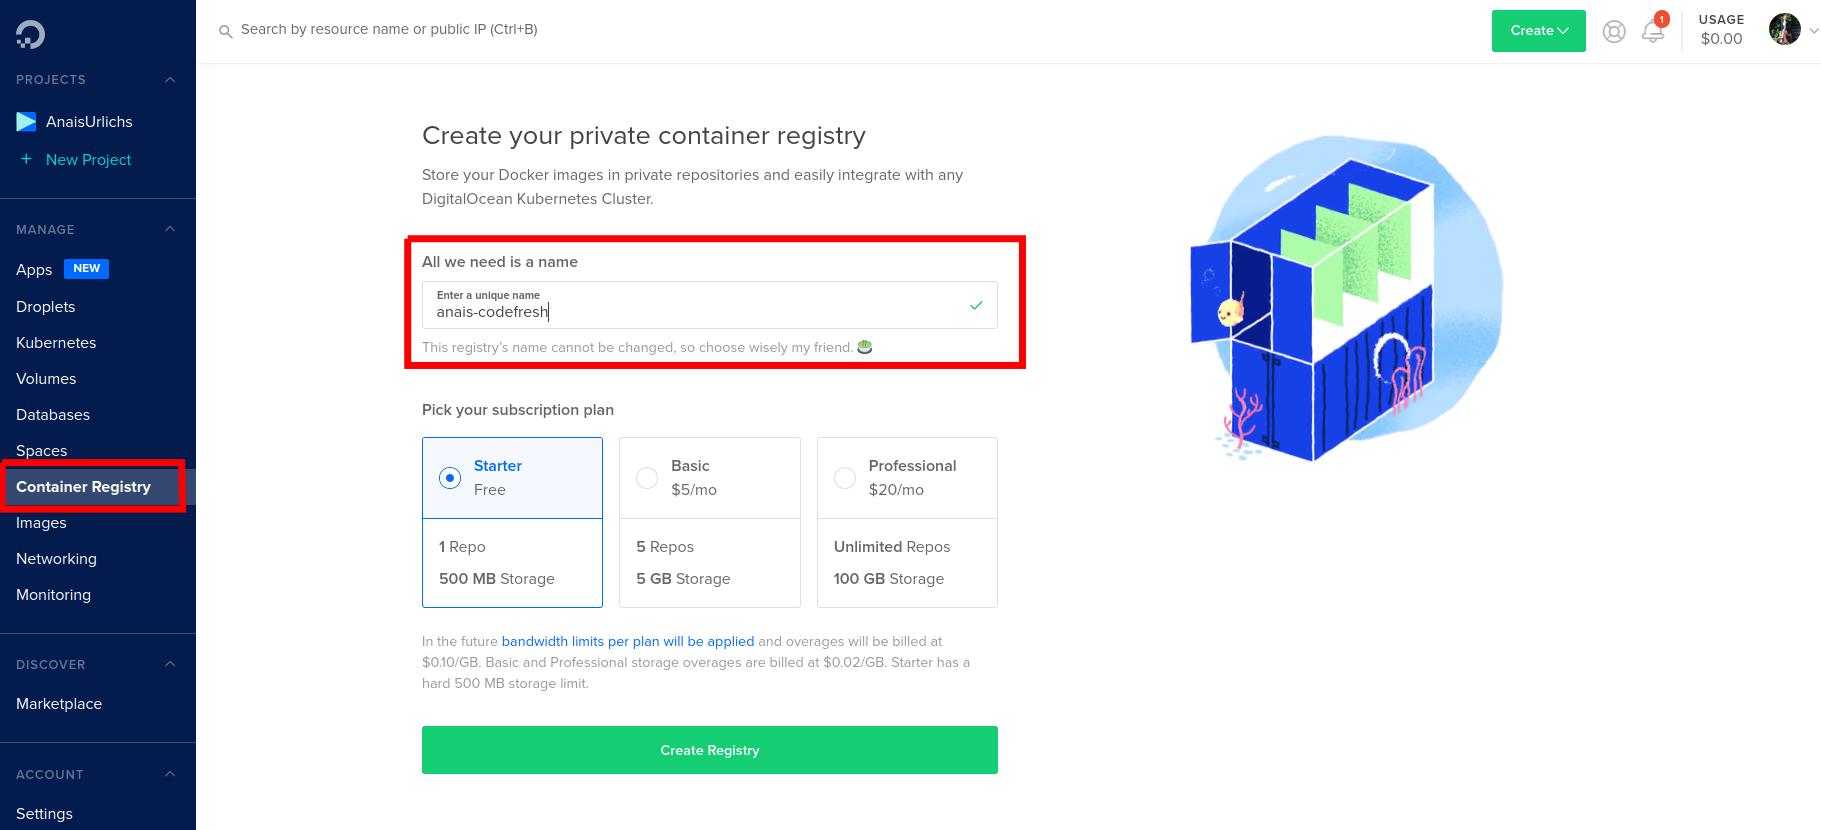 Create Container Registry in DigitalOcean